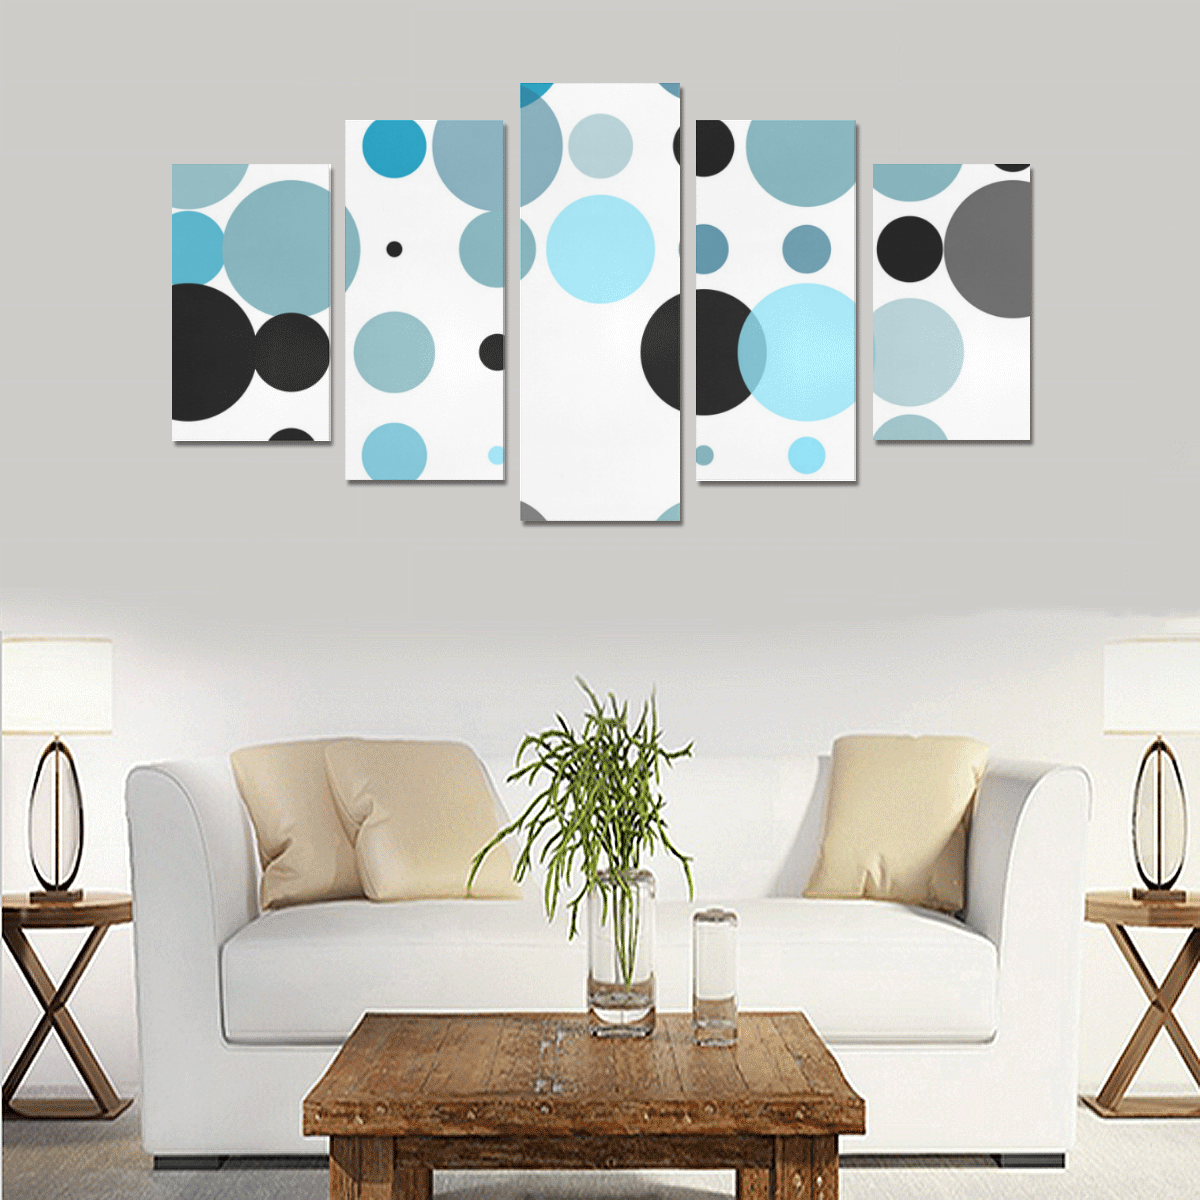 Blue black and gray polka dots Canvas Print Sets A (No Frame)